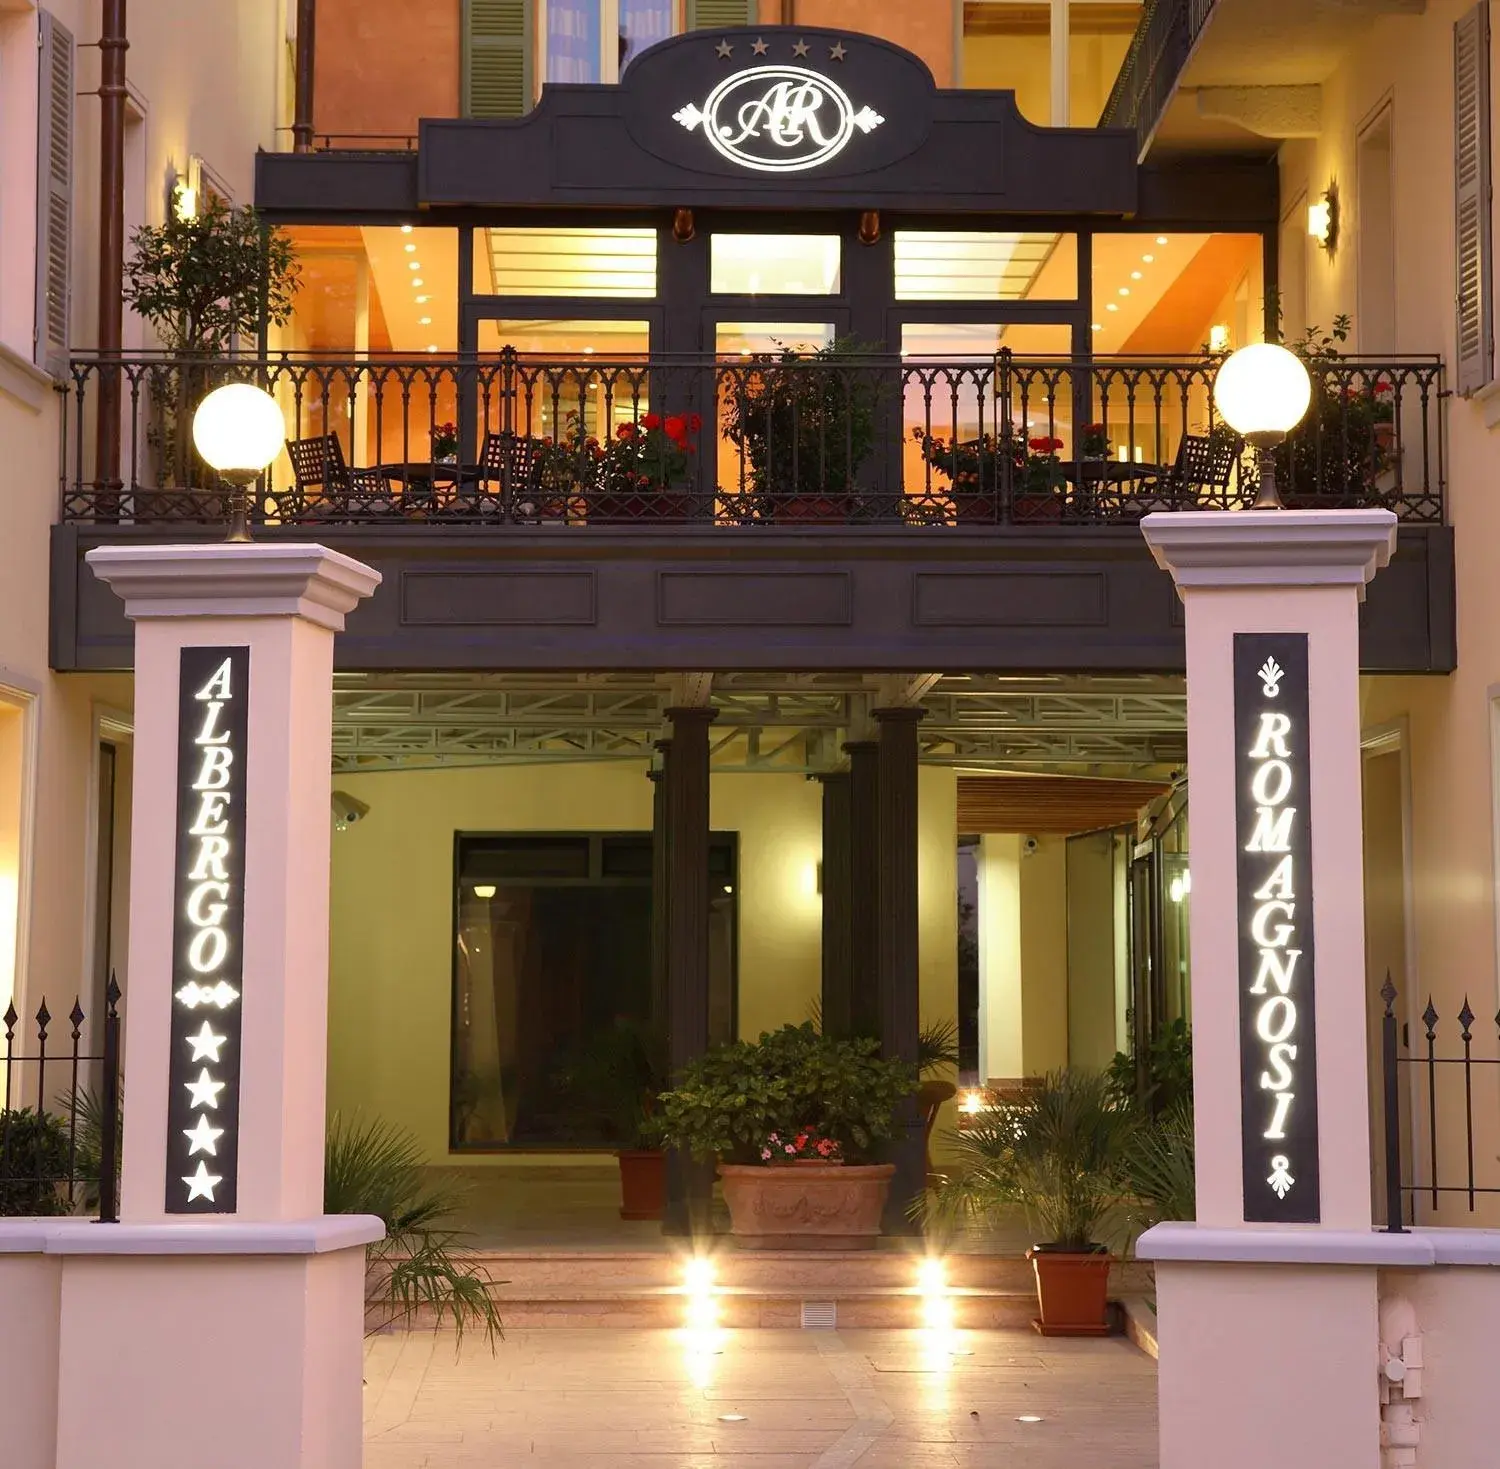 Facade/entrance in Casa Romagnosi